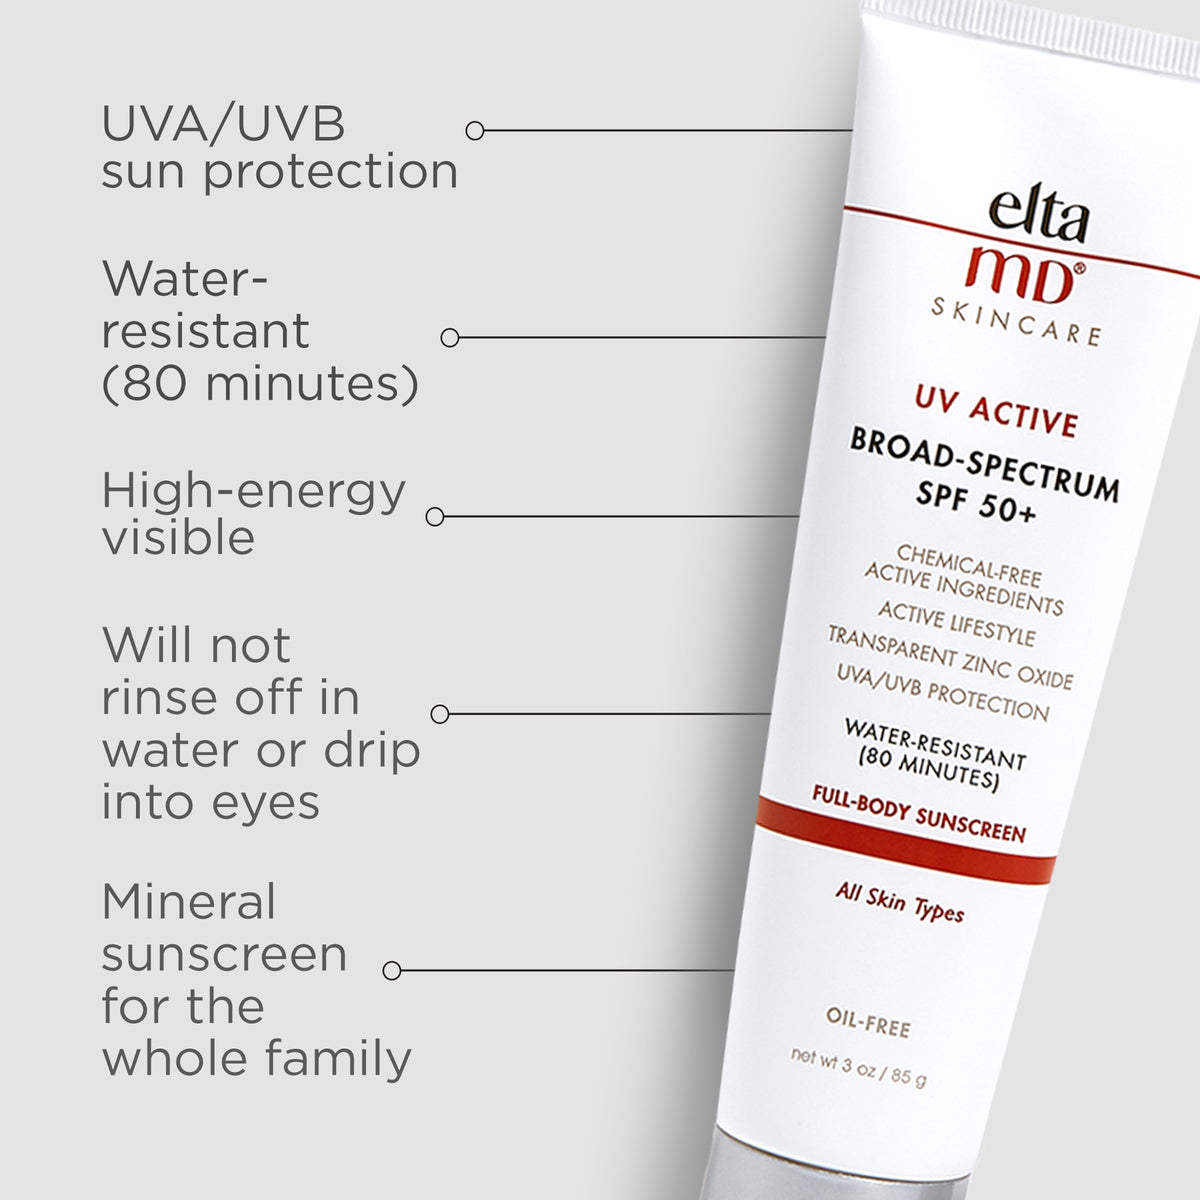 eltaMD UV active: a sunscreen SPF 50